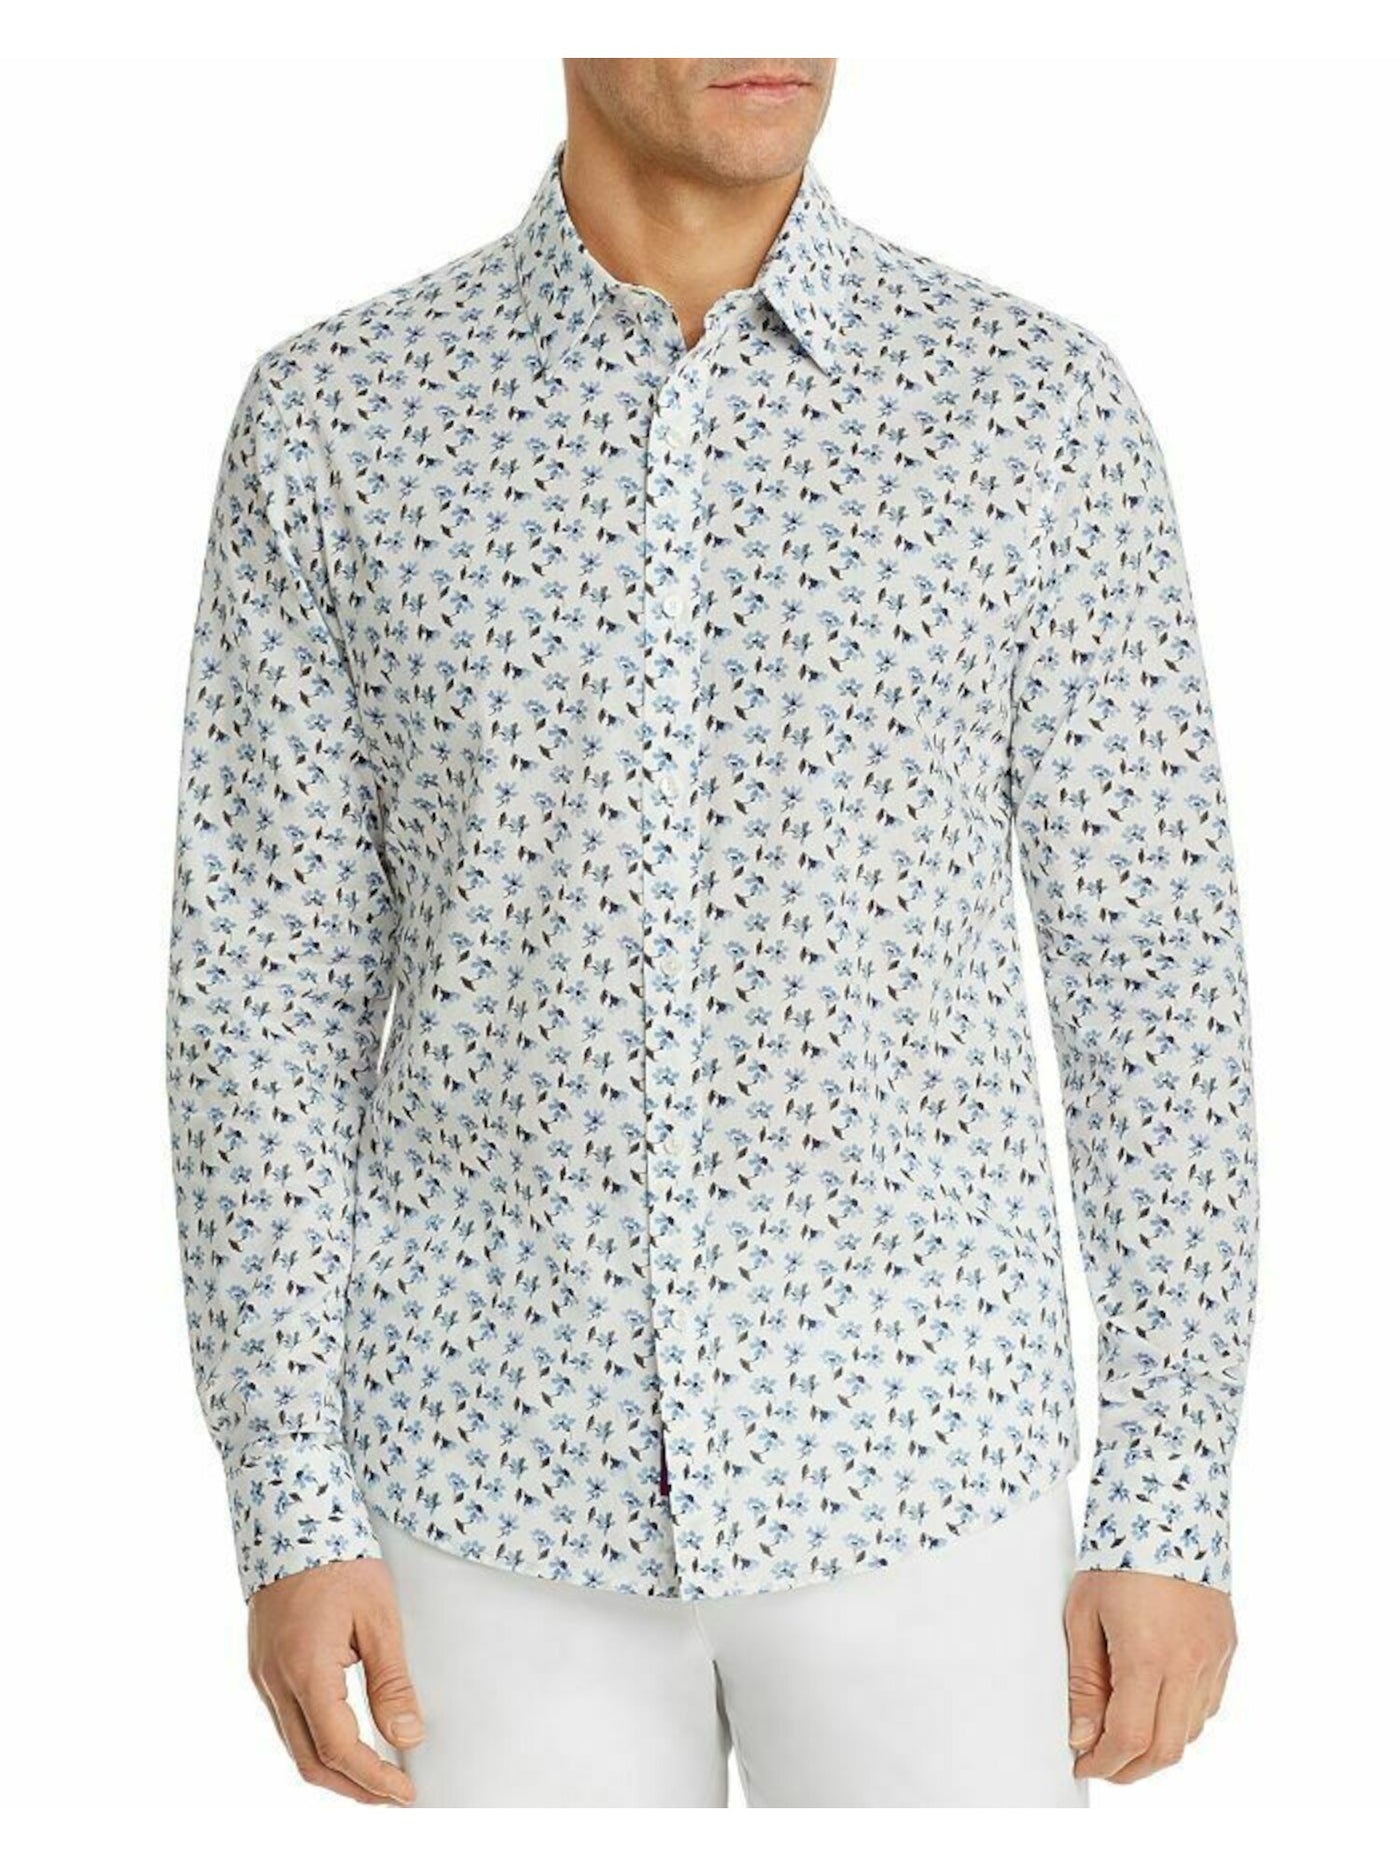 MICHAEL KORS Mens White Floral Long Sleeve Slim Fit Button Down Cotton Shirt L